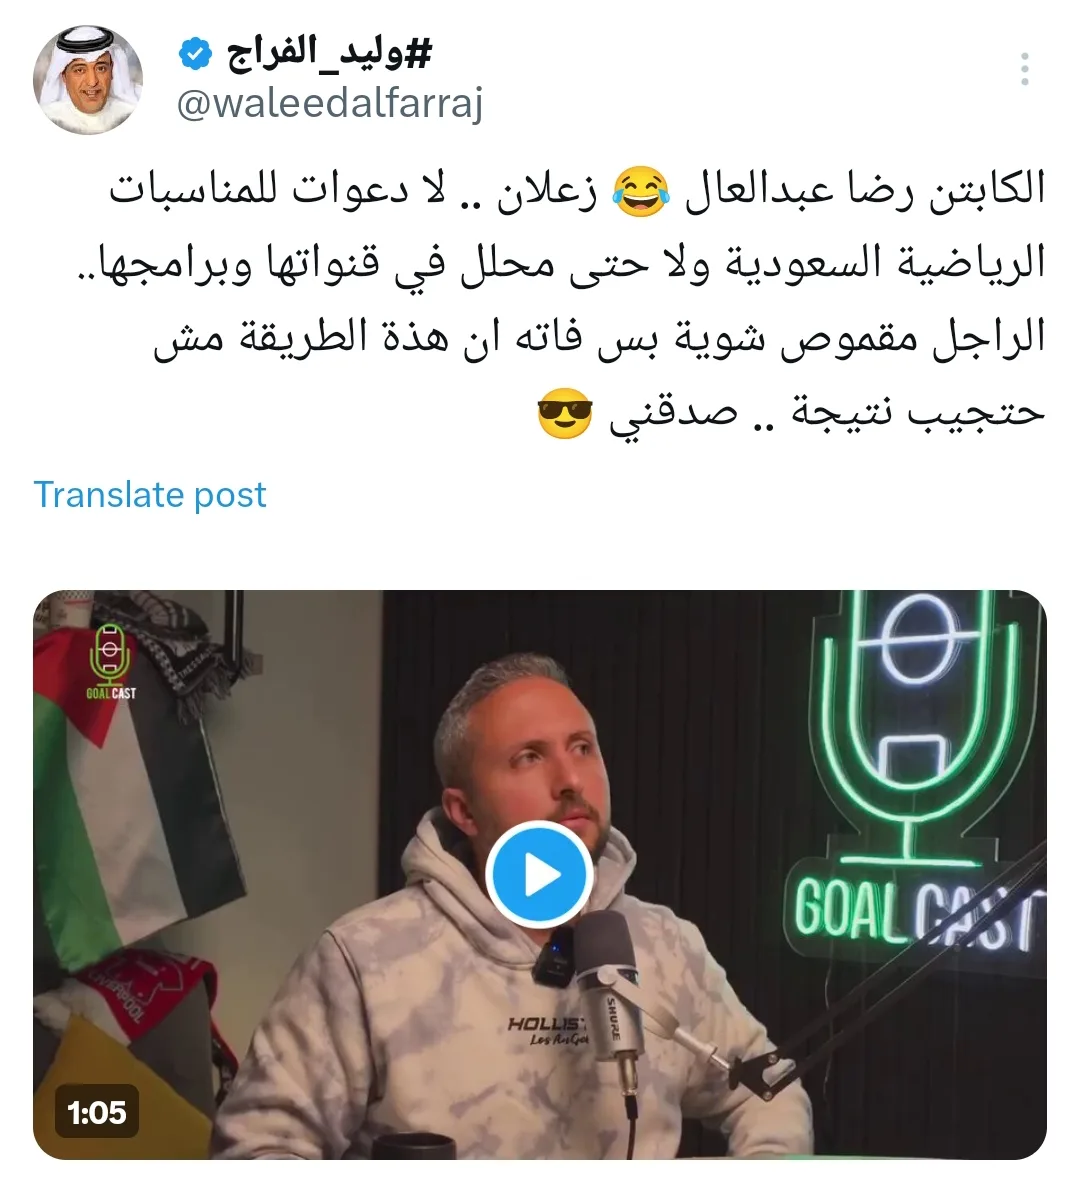 وليد الفراج يفتح النار على رضا عبدالعال بسبب حديثه عن الزمالك والدوري السعودي !!! - فيديو